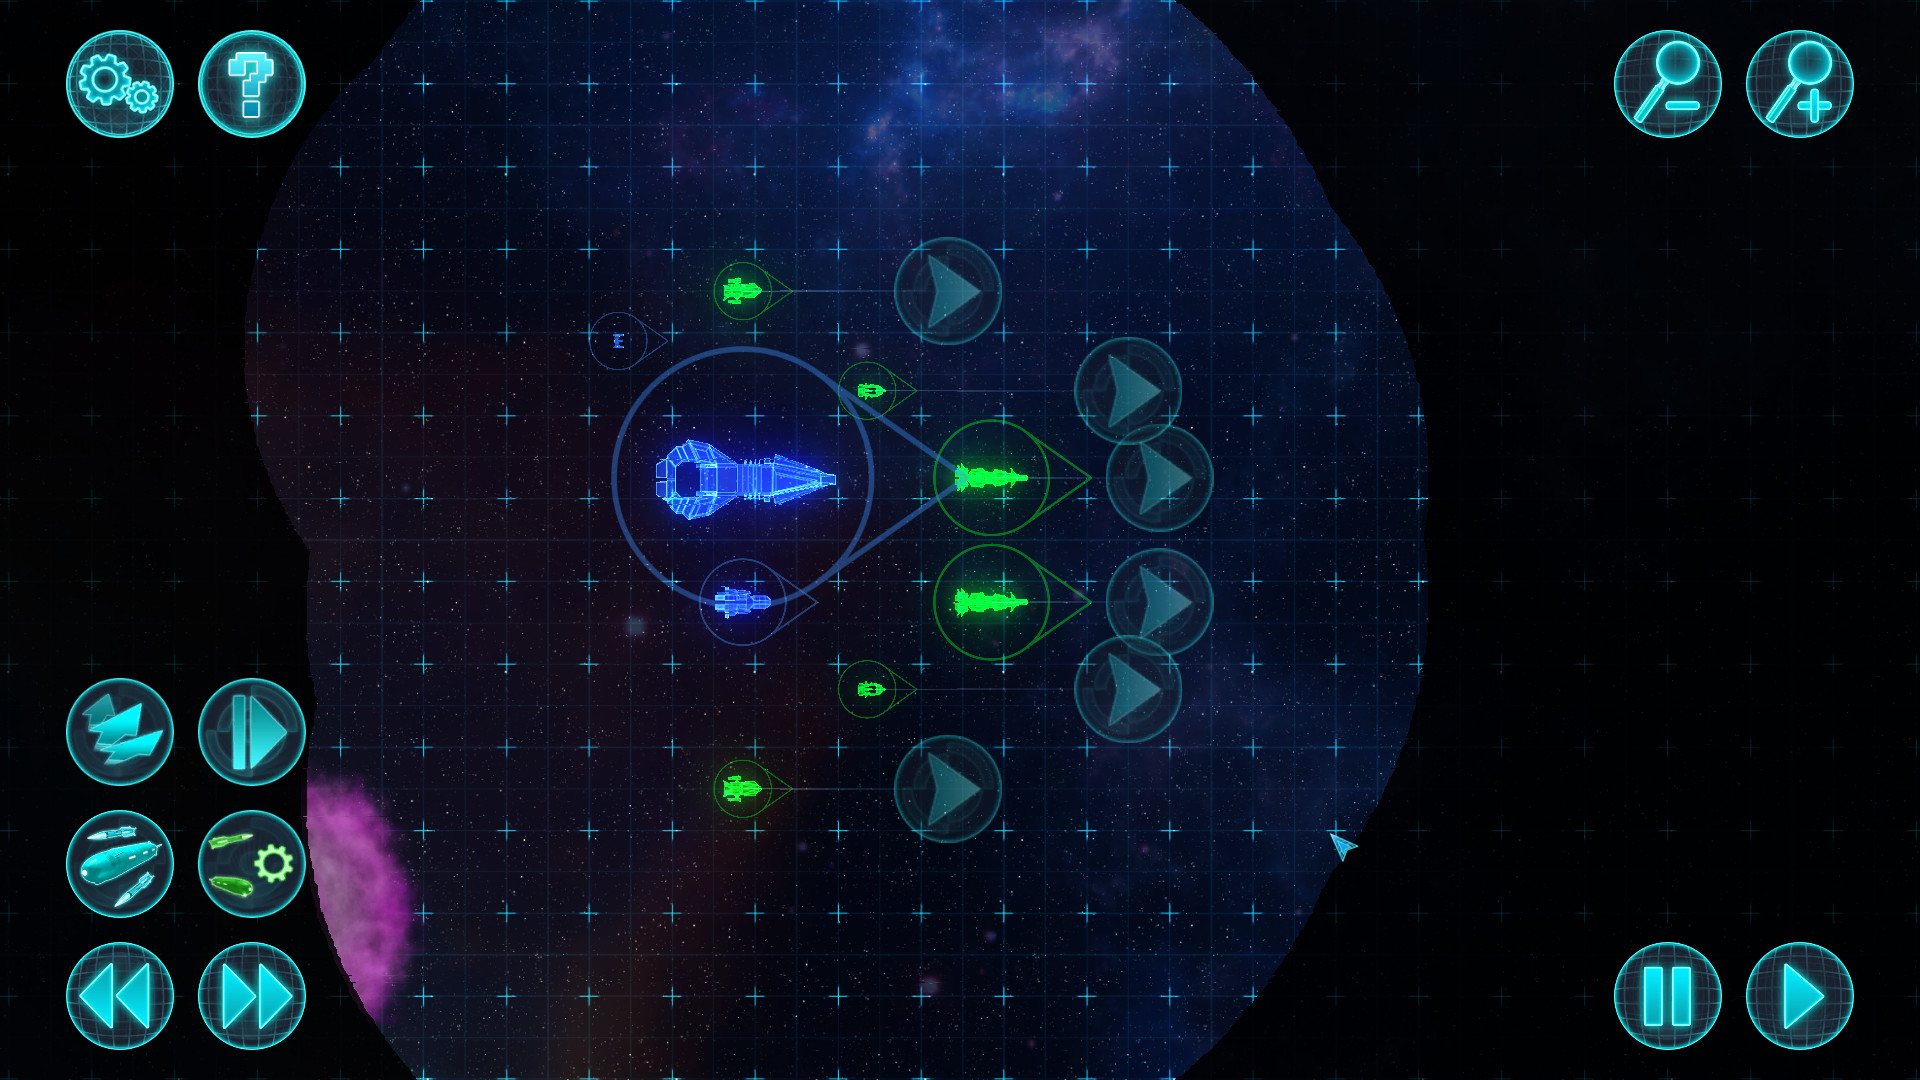 Star Tactics Redux - Expeditions screenshot